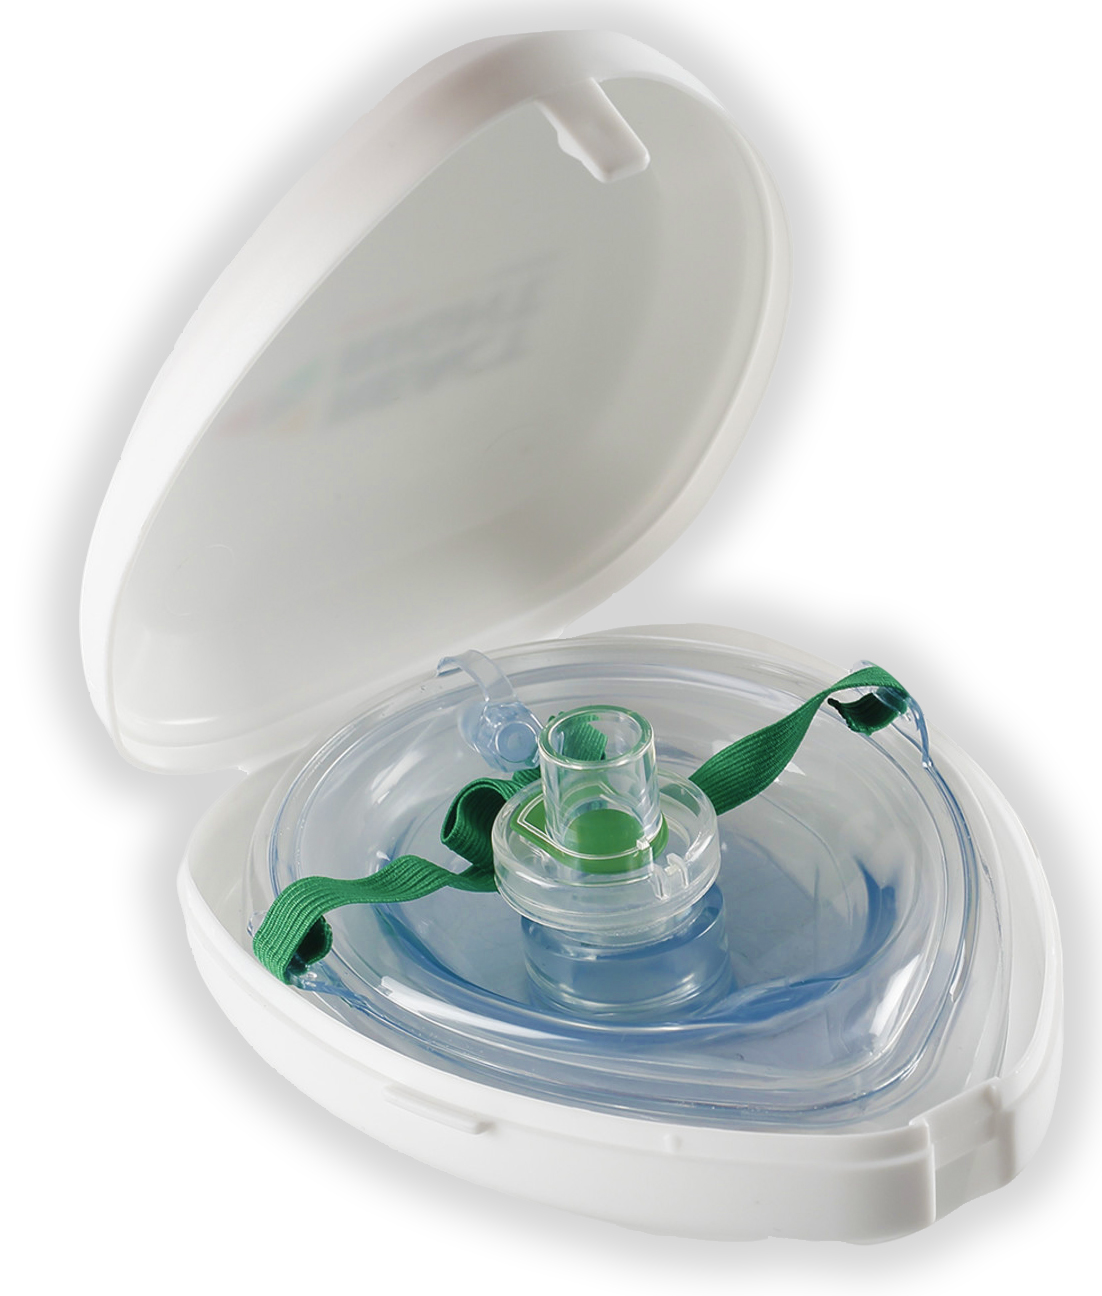 Устройство маска рот устройство рот. 7294 Маска анестезиологическая лицевая Clearlite. Карманная маска для ИВЛ "рот-маска" Laerdal. Маска лицевая анестезиологическая размер 1. Маска для ИВЛ С обратным клапаном.